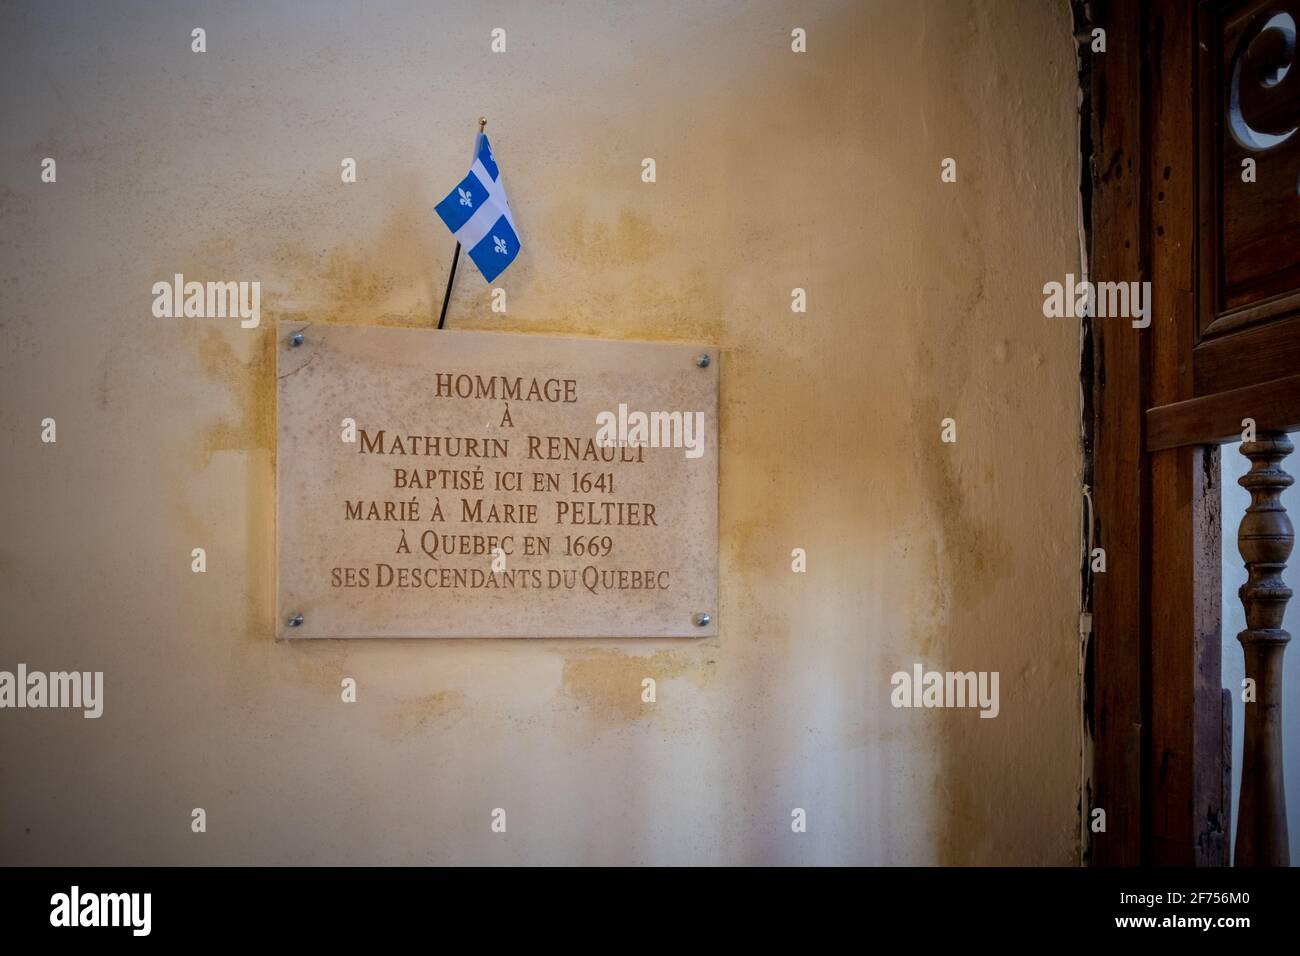 ARS-en-Ré, France - 24 février 2020 : plaque commémorative des colons qui quittent le Québec. Prise à l'intérieur d'une église de l'île de Ré. Banque D'Images